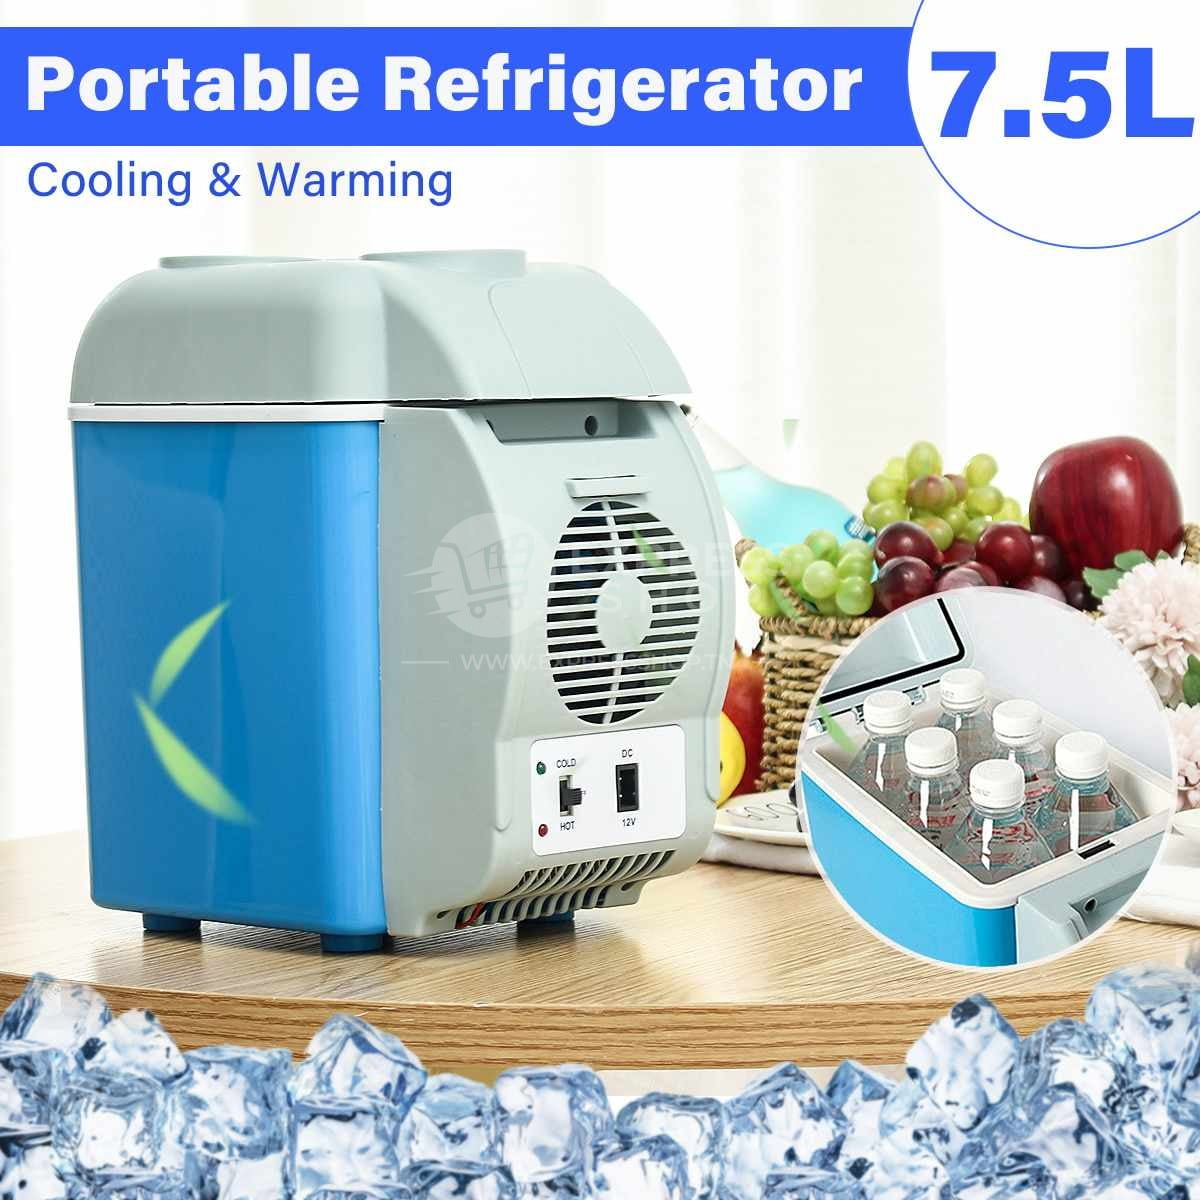 Mini réfrigérateur et réchauffeur de voiture portable 30 L 12 V